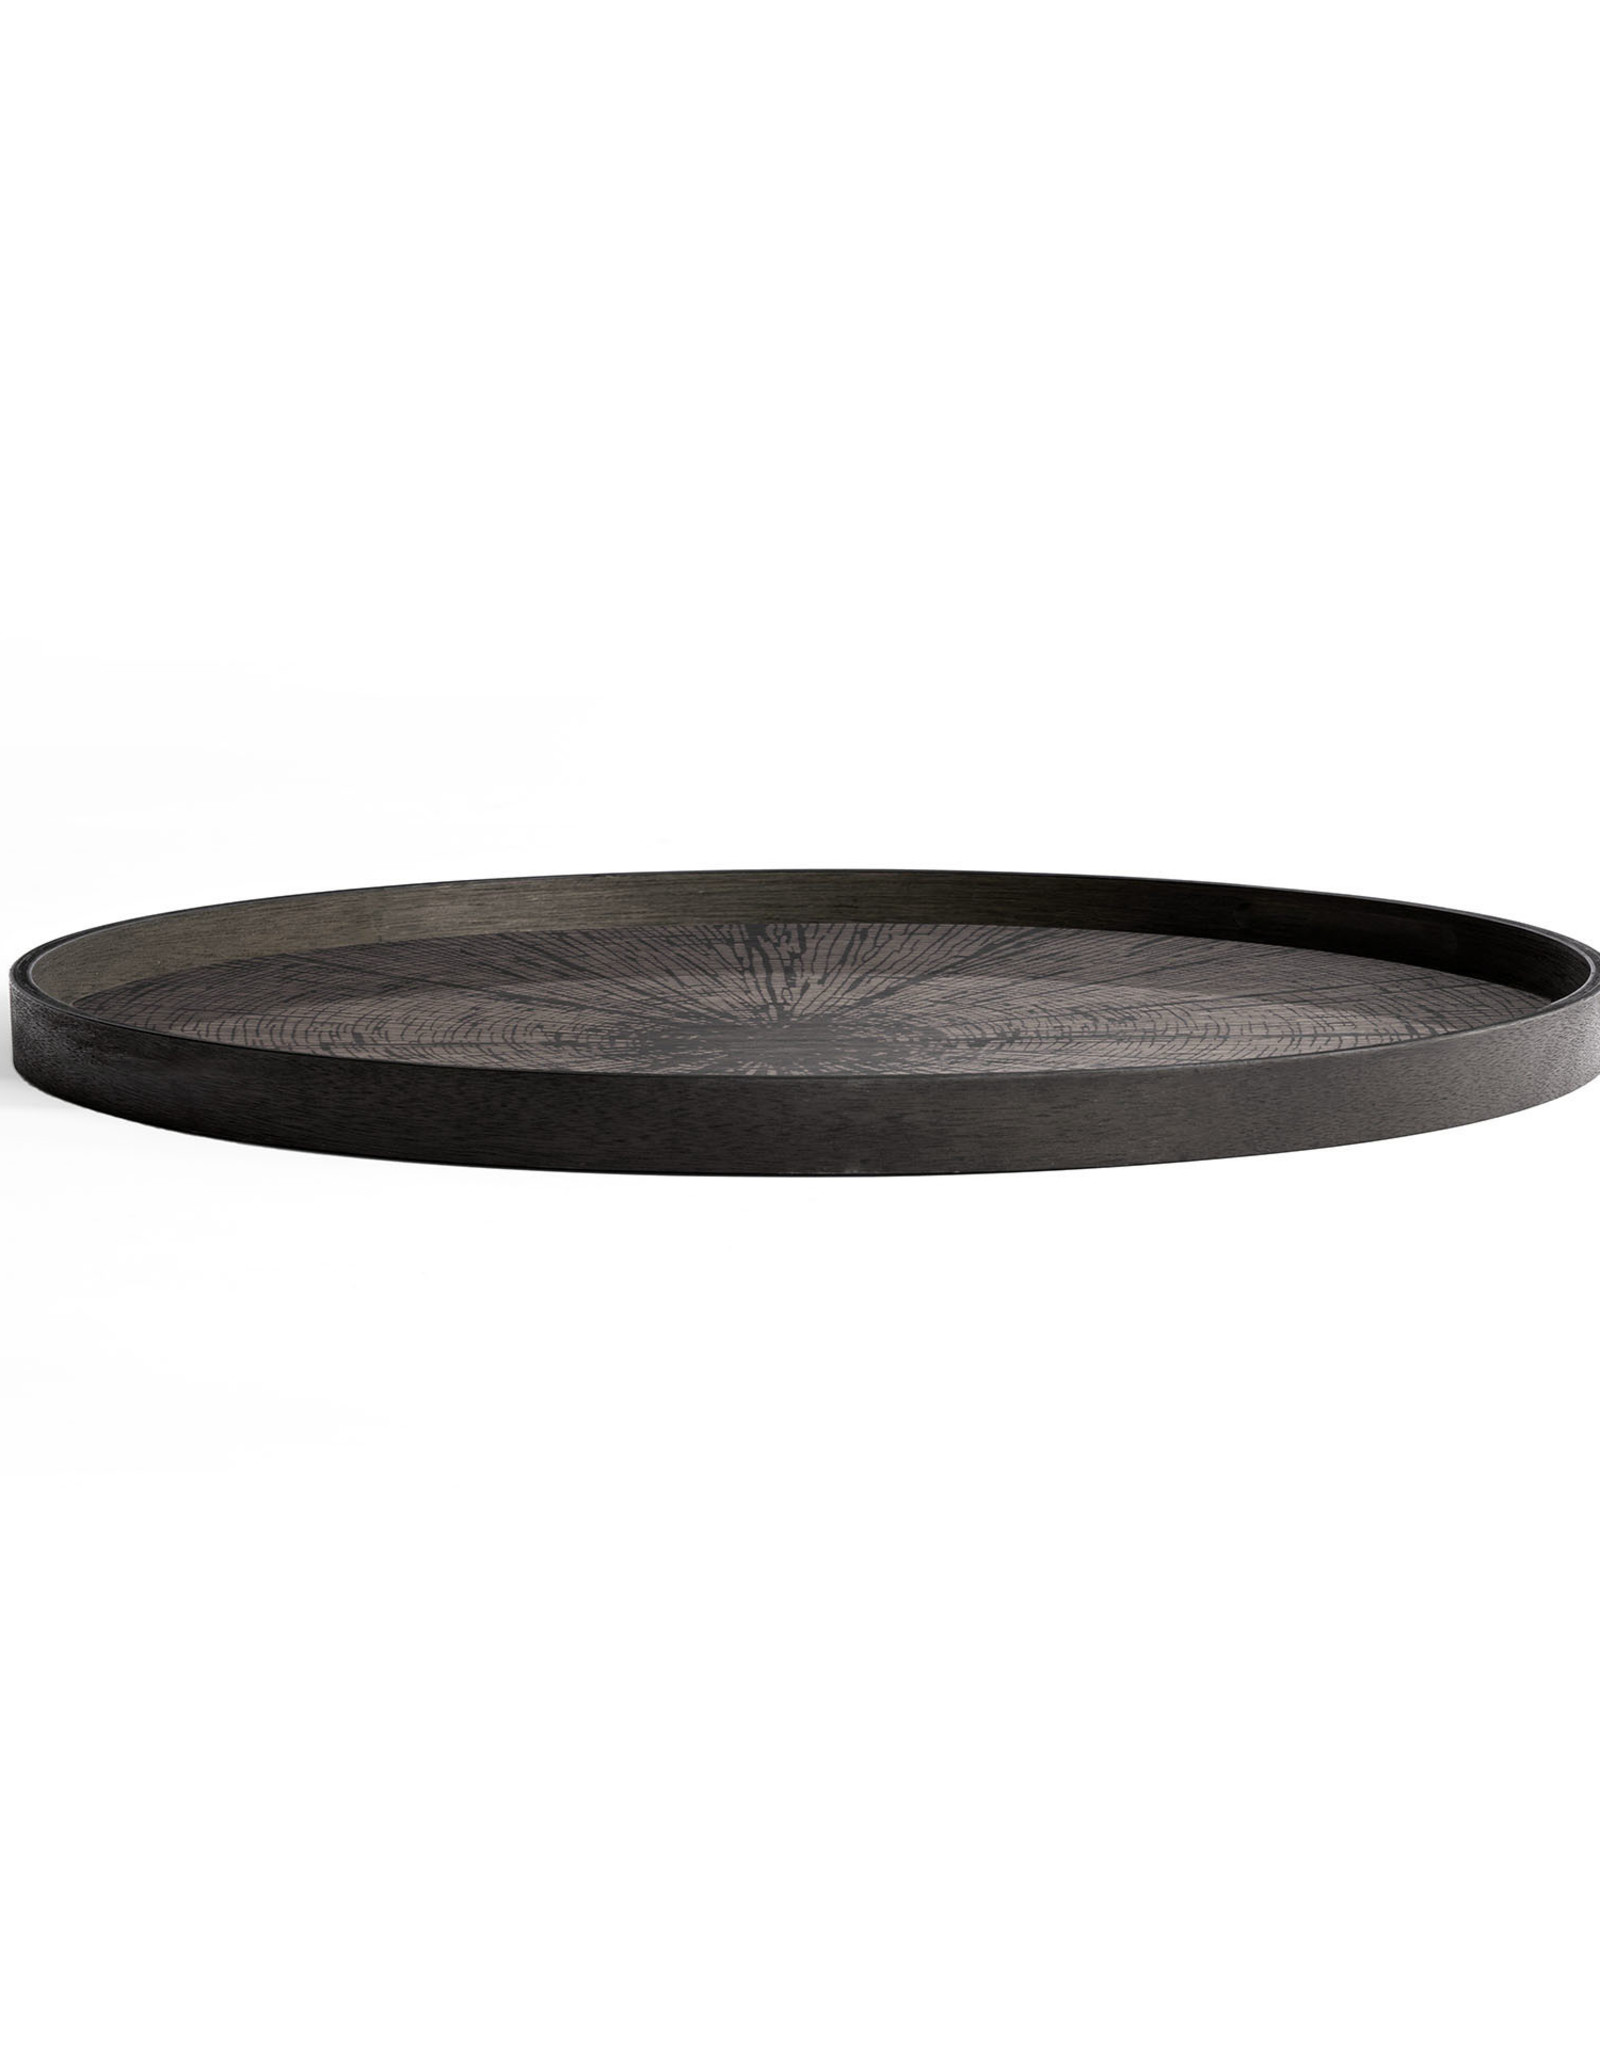 Black Slice wooden tray - round - XL